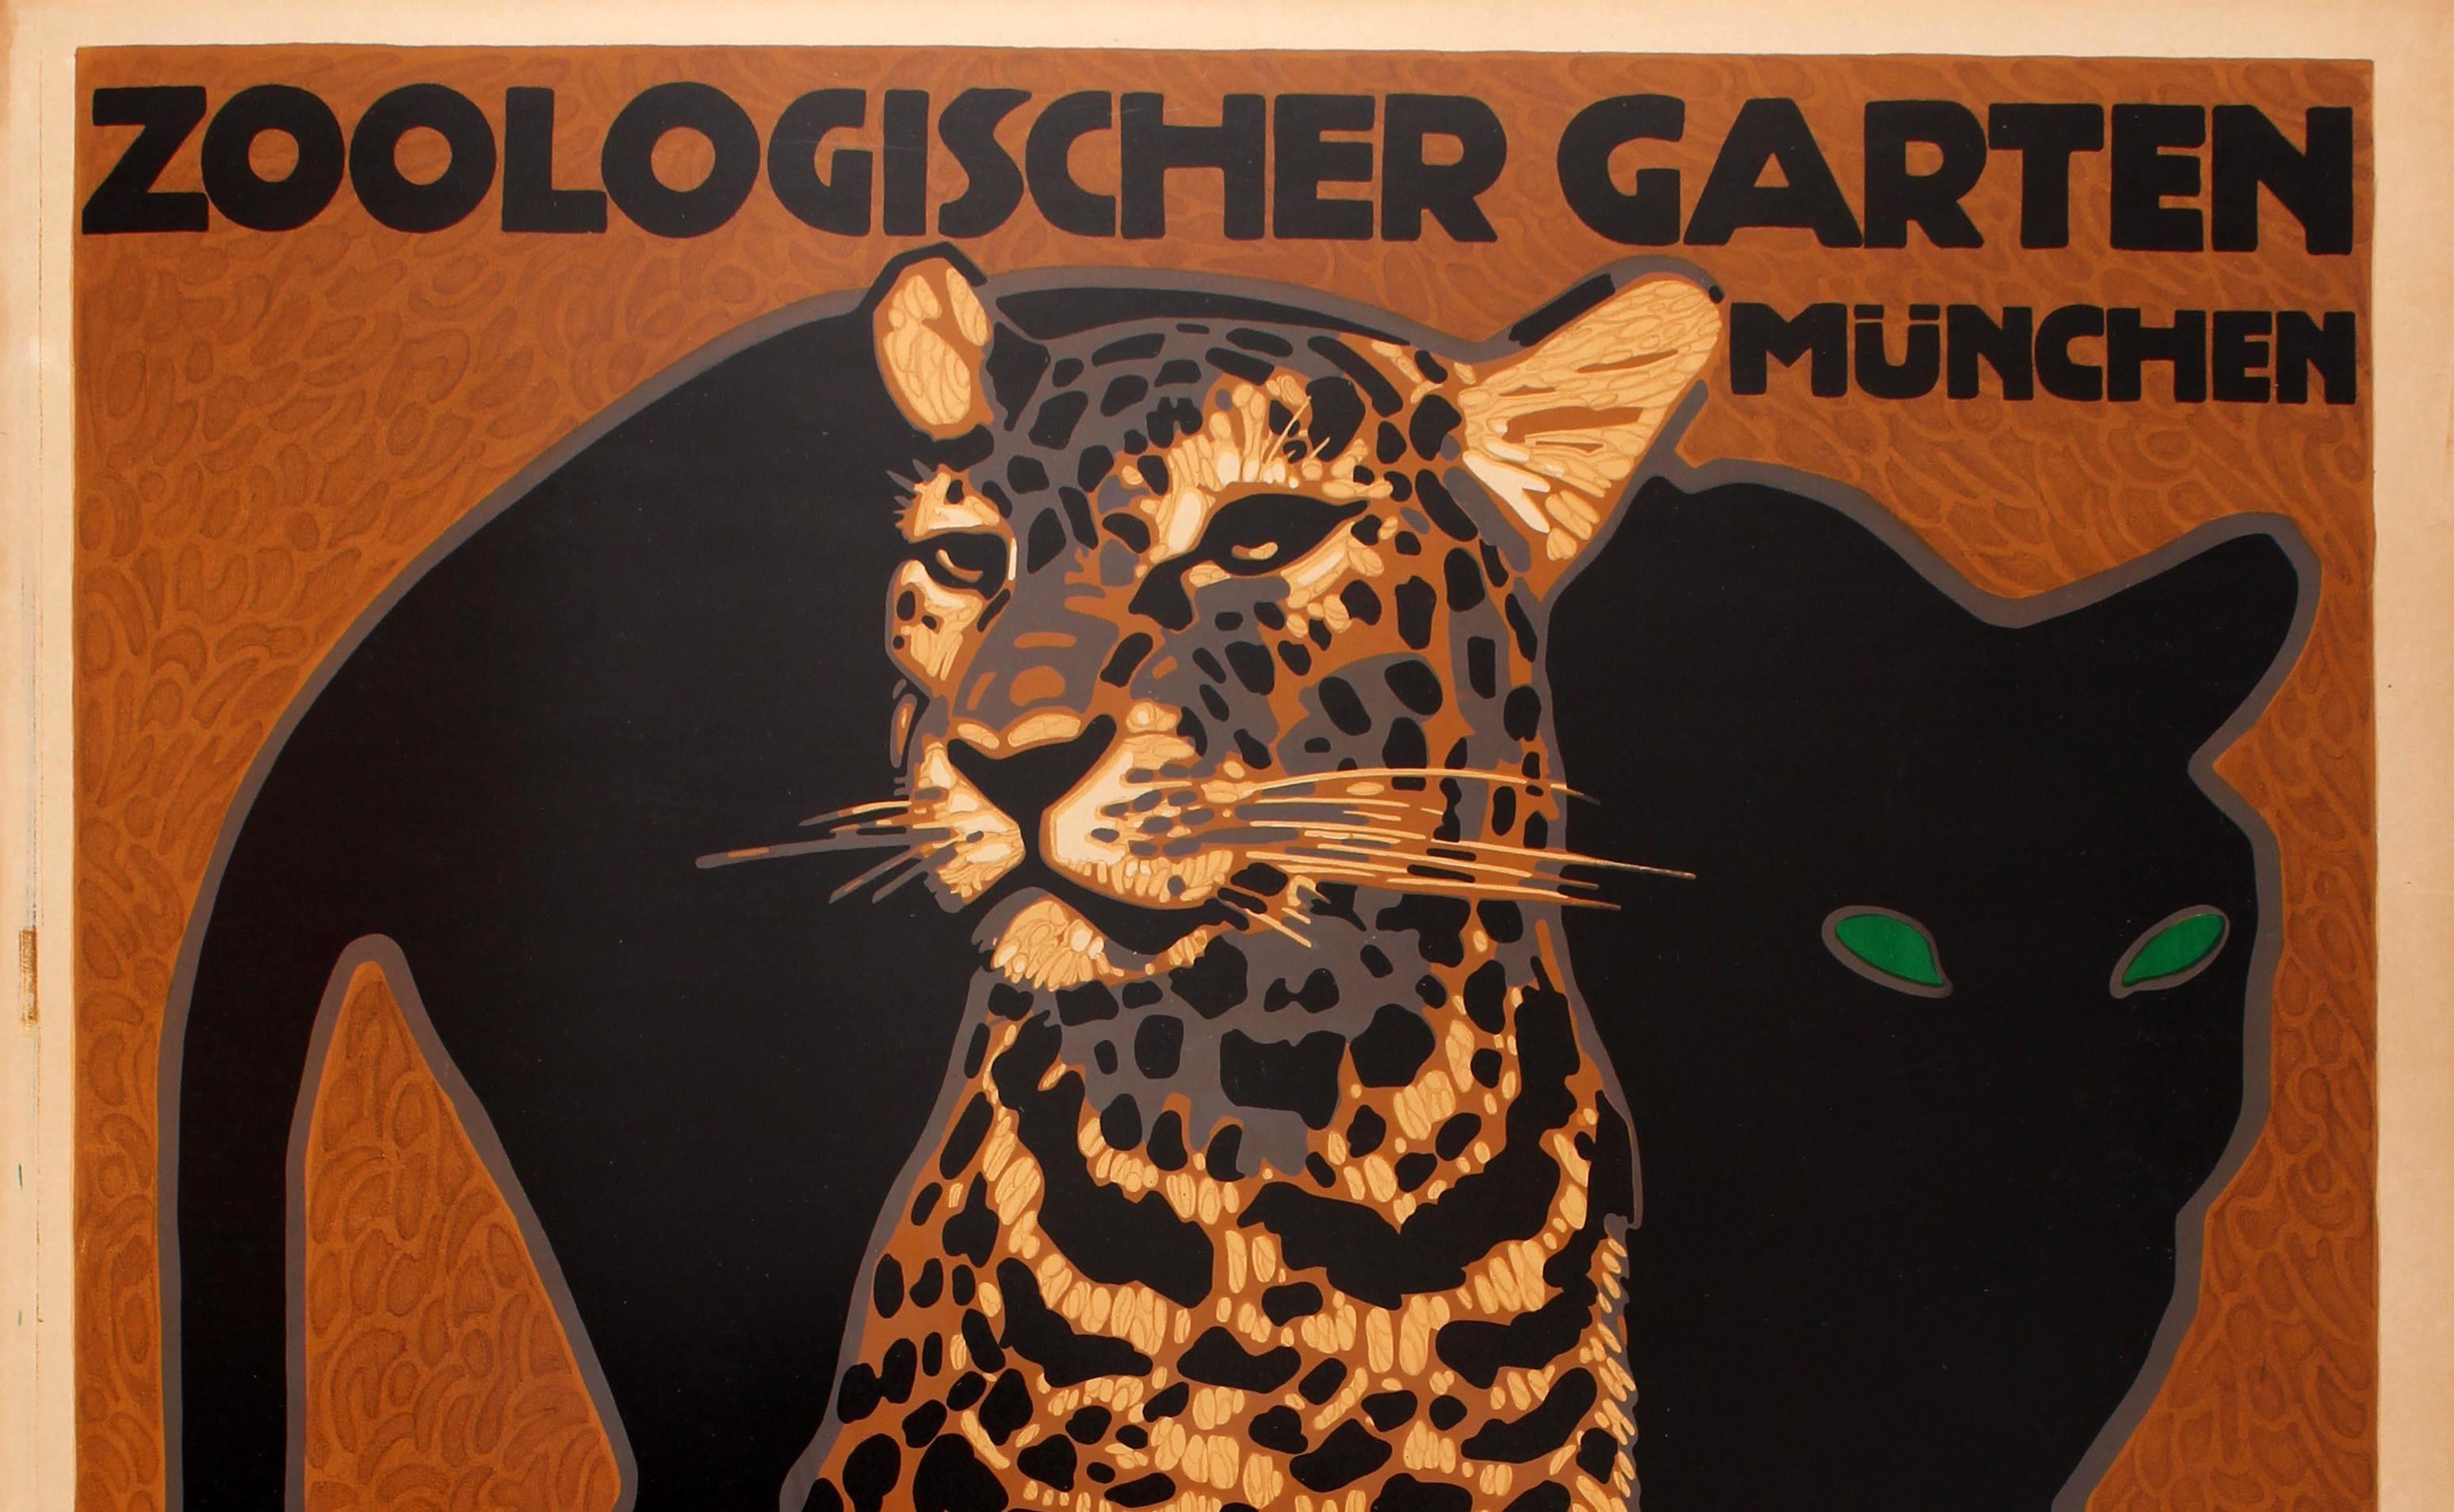 Affiche publicitaire originale pour le parc zoologique de Munich / Zoologischer Garten Munchen, réalisée par le célèbre graphiste allemand Ludwig Hohlwein (1874-1949). Superbe œuvre d'art représentant une panthère noire aux yeux verts derrière un